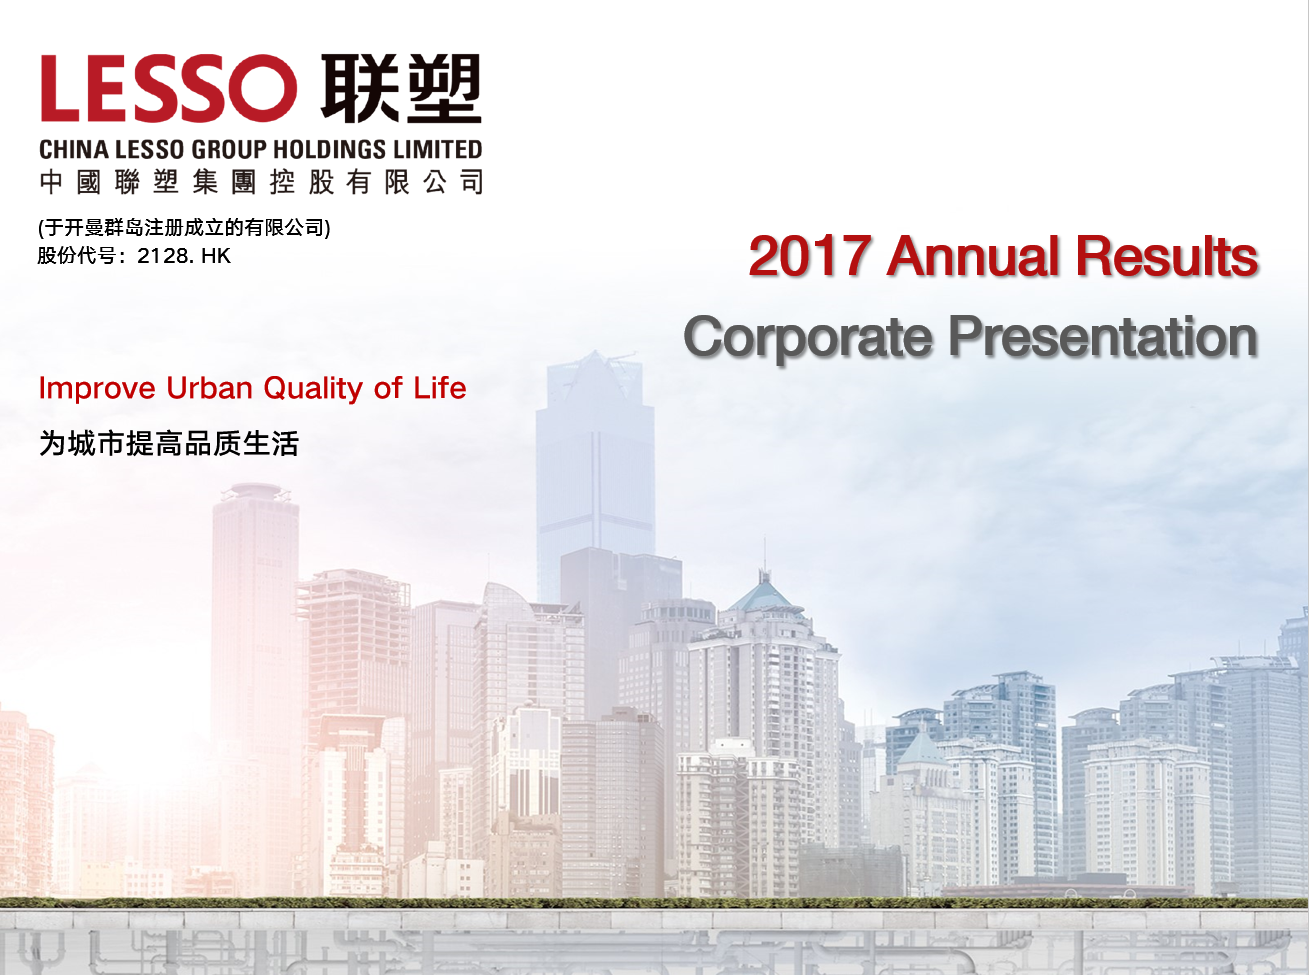 2017 Annual Results Corporate Presentation